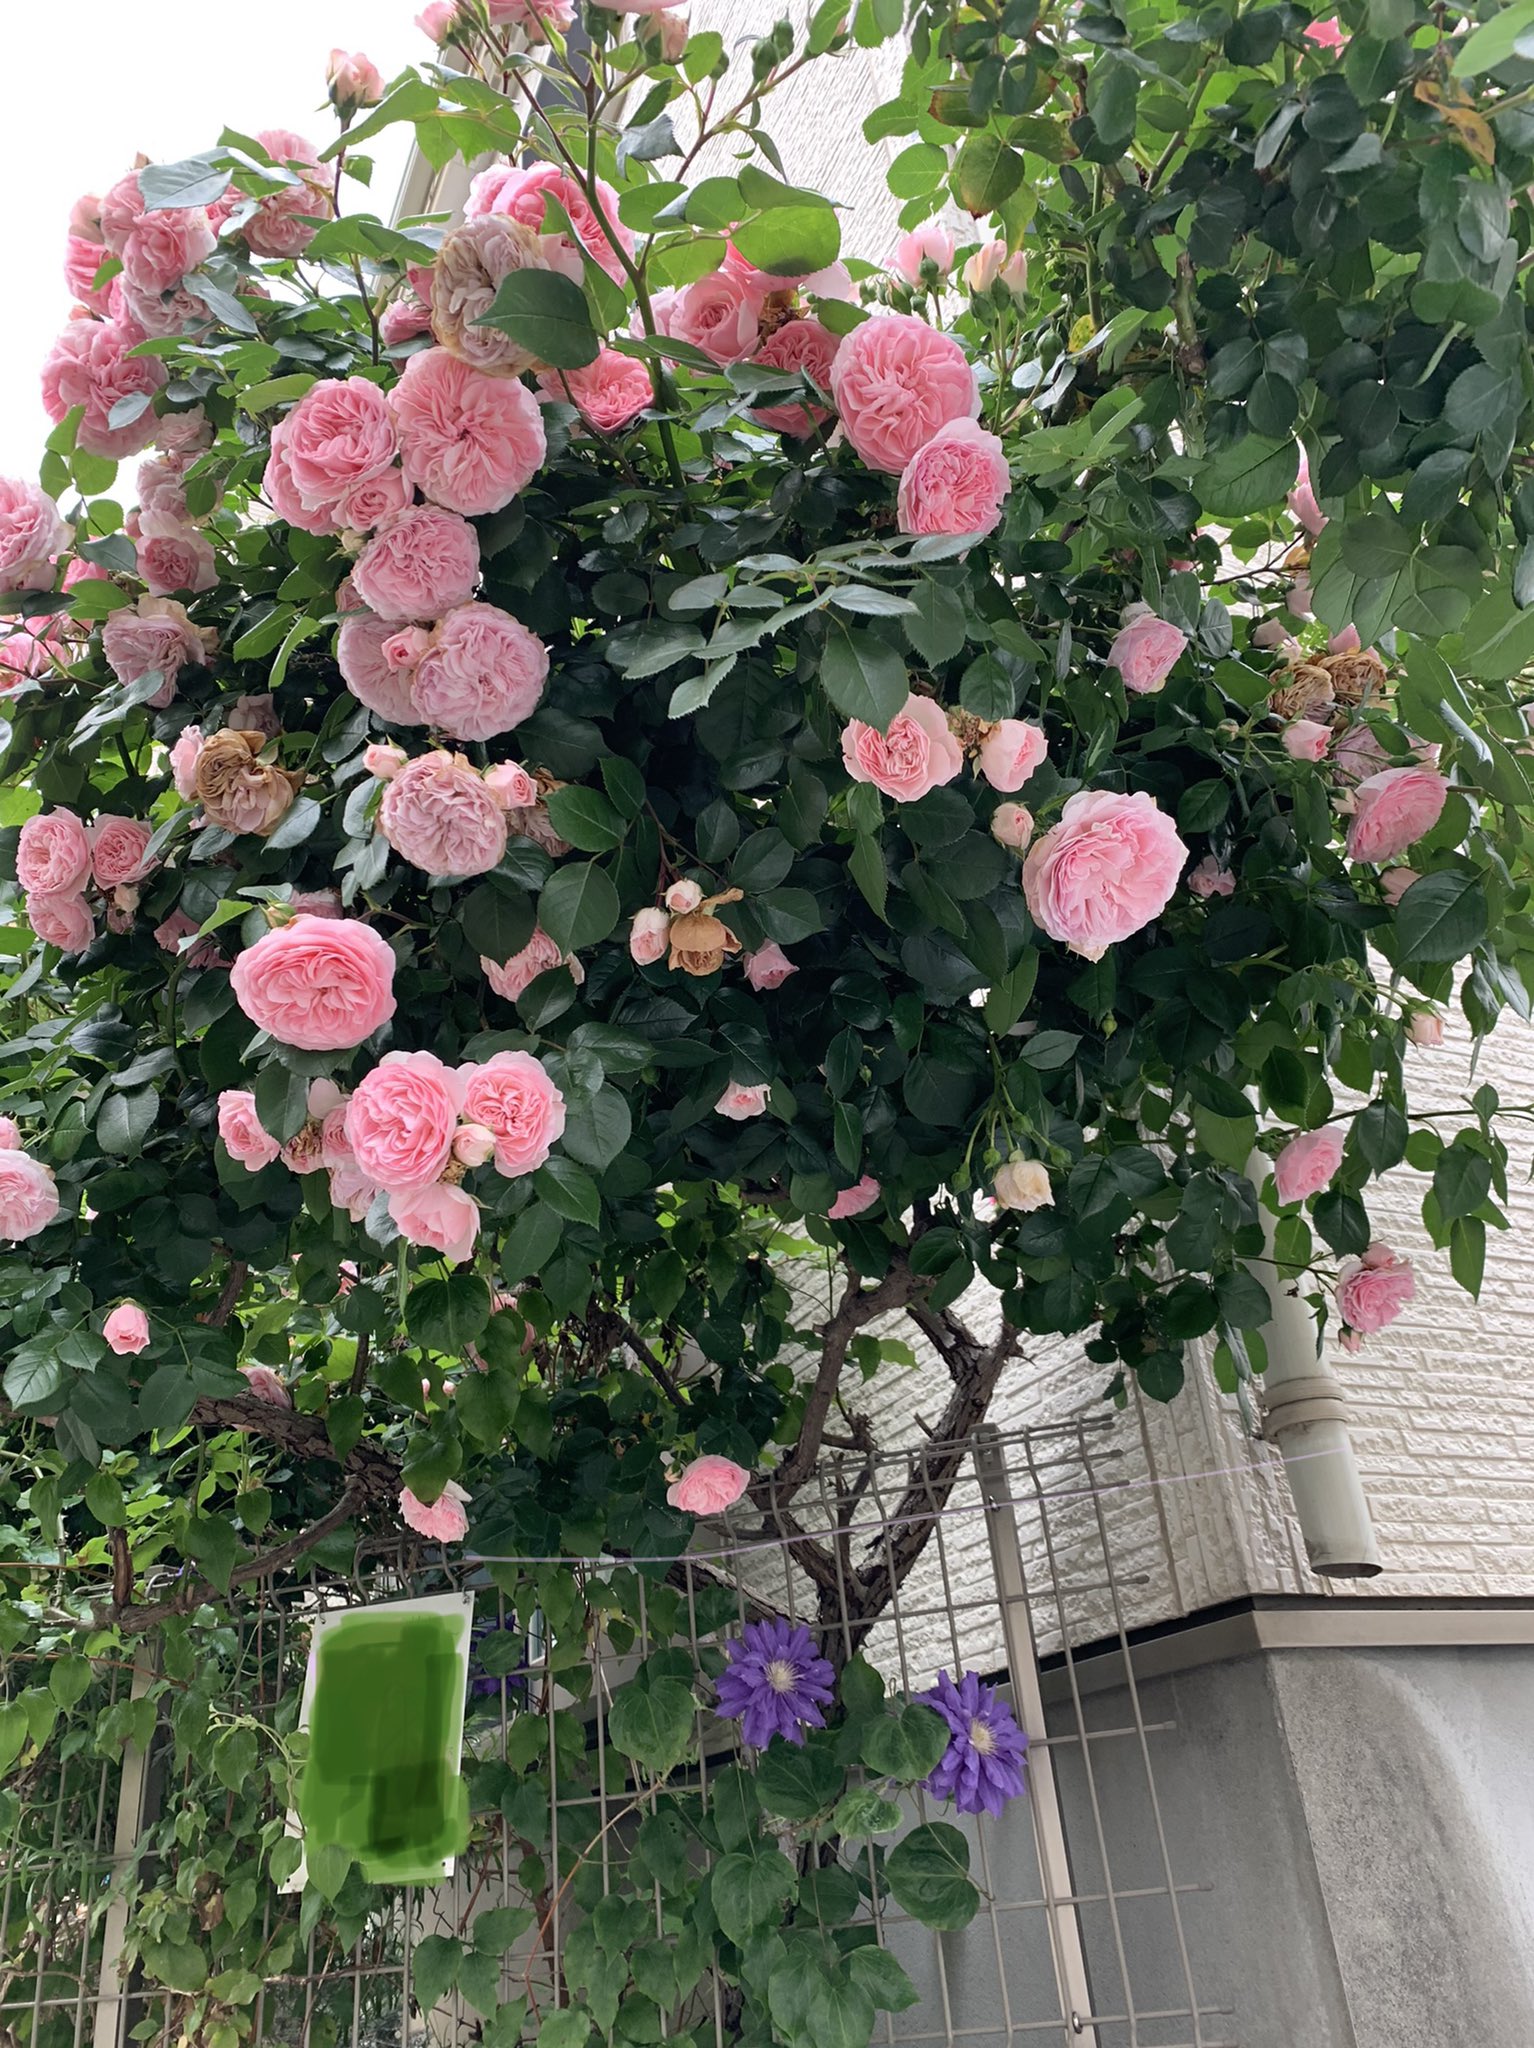 تويتر しいぴん 投資と優待がスキ على تويتر 今年もうちの狭い庭に薔薇が満開に咲きました T Co P5kgf7k5pf